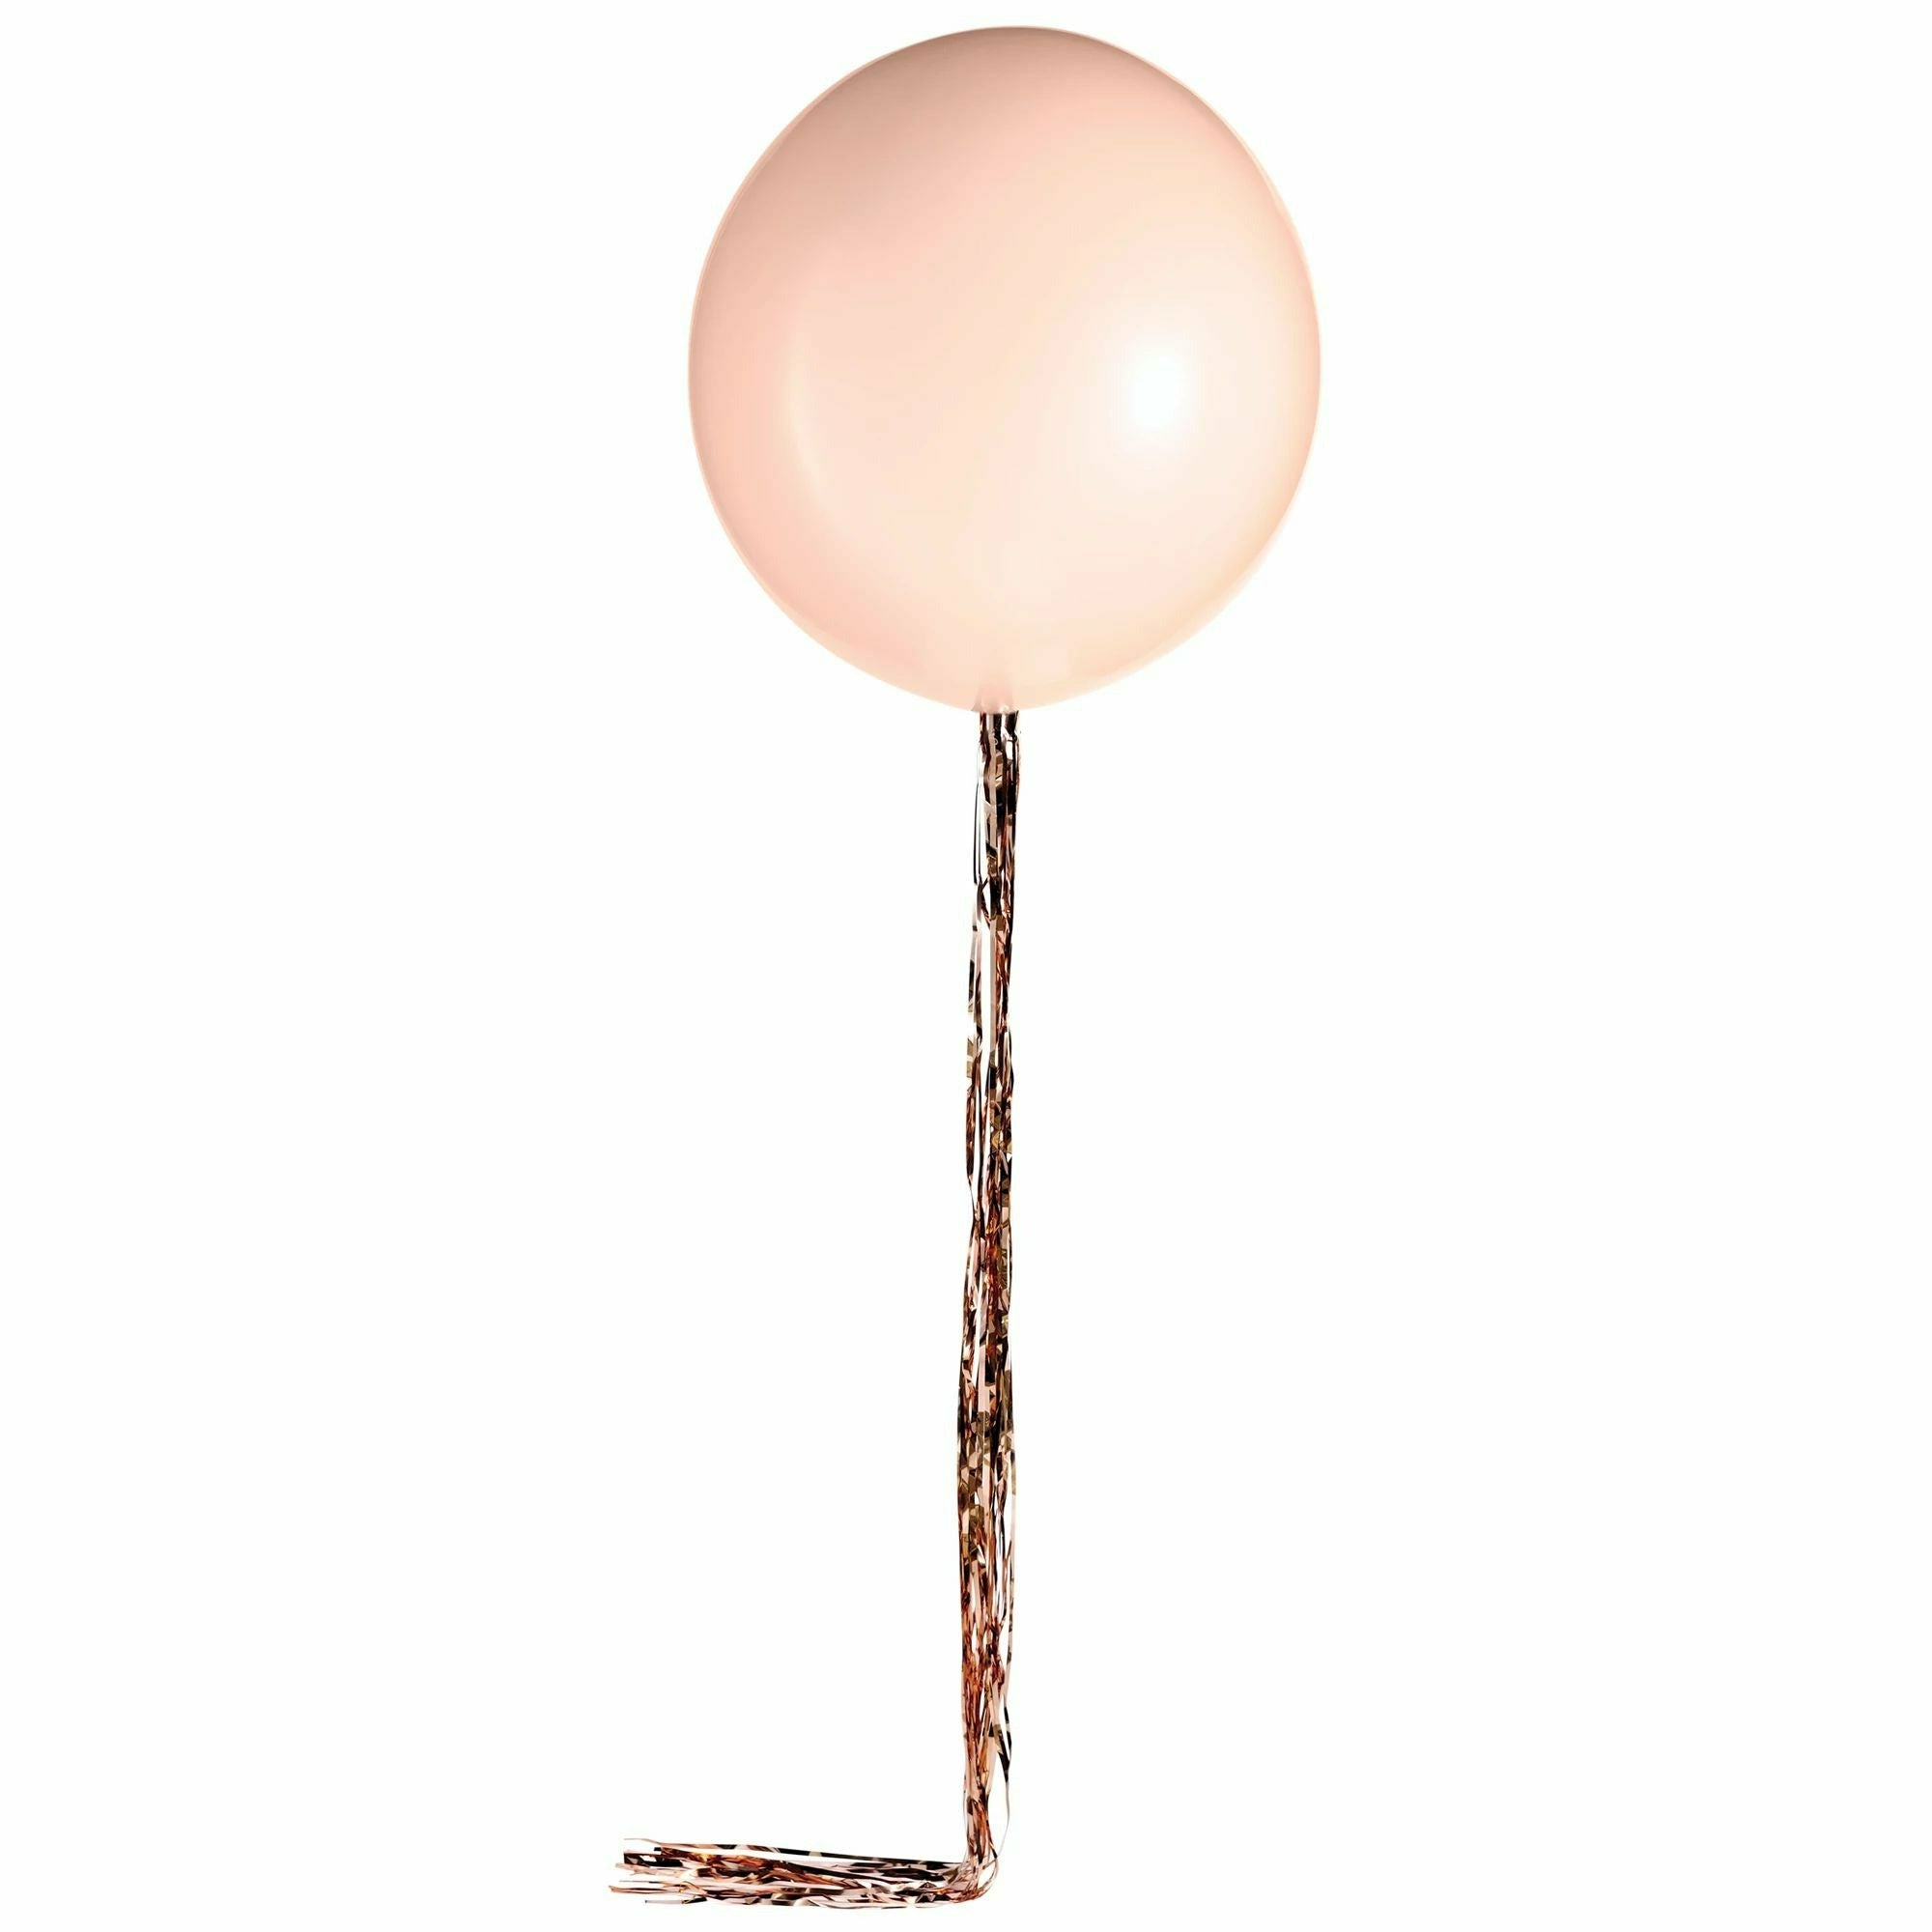 Amscan BALLOONS Balloon w/ Rose Gold Tinsel Tail